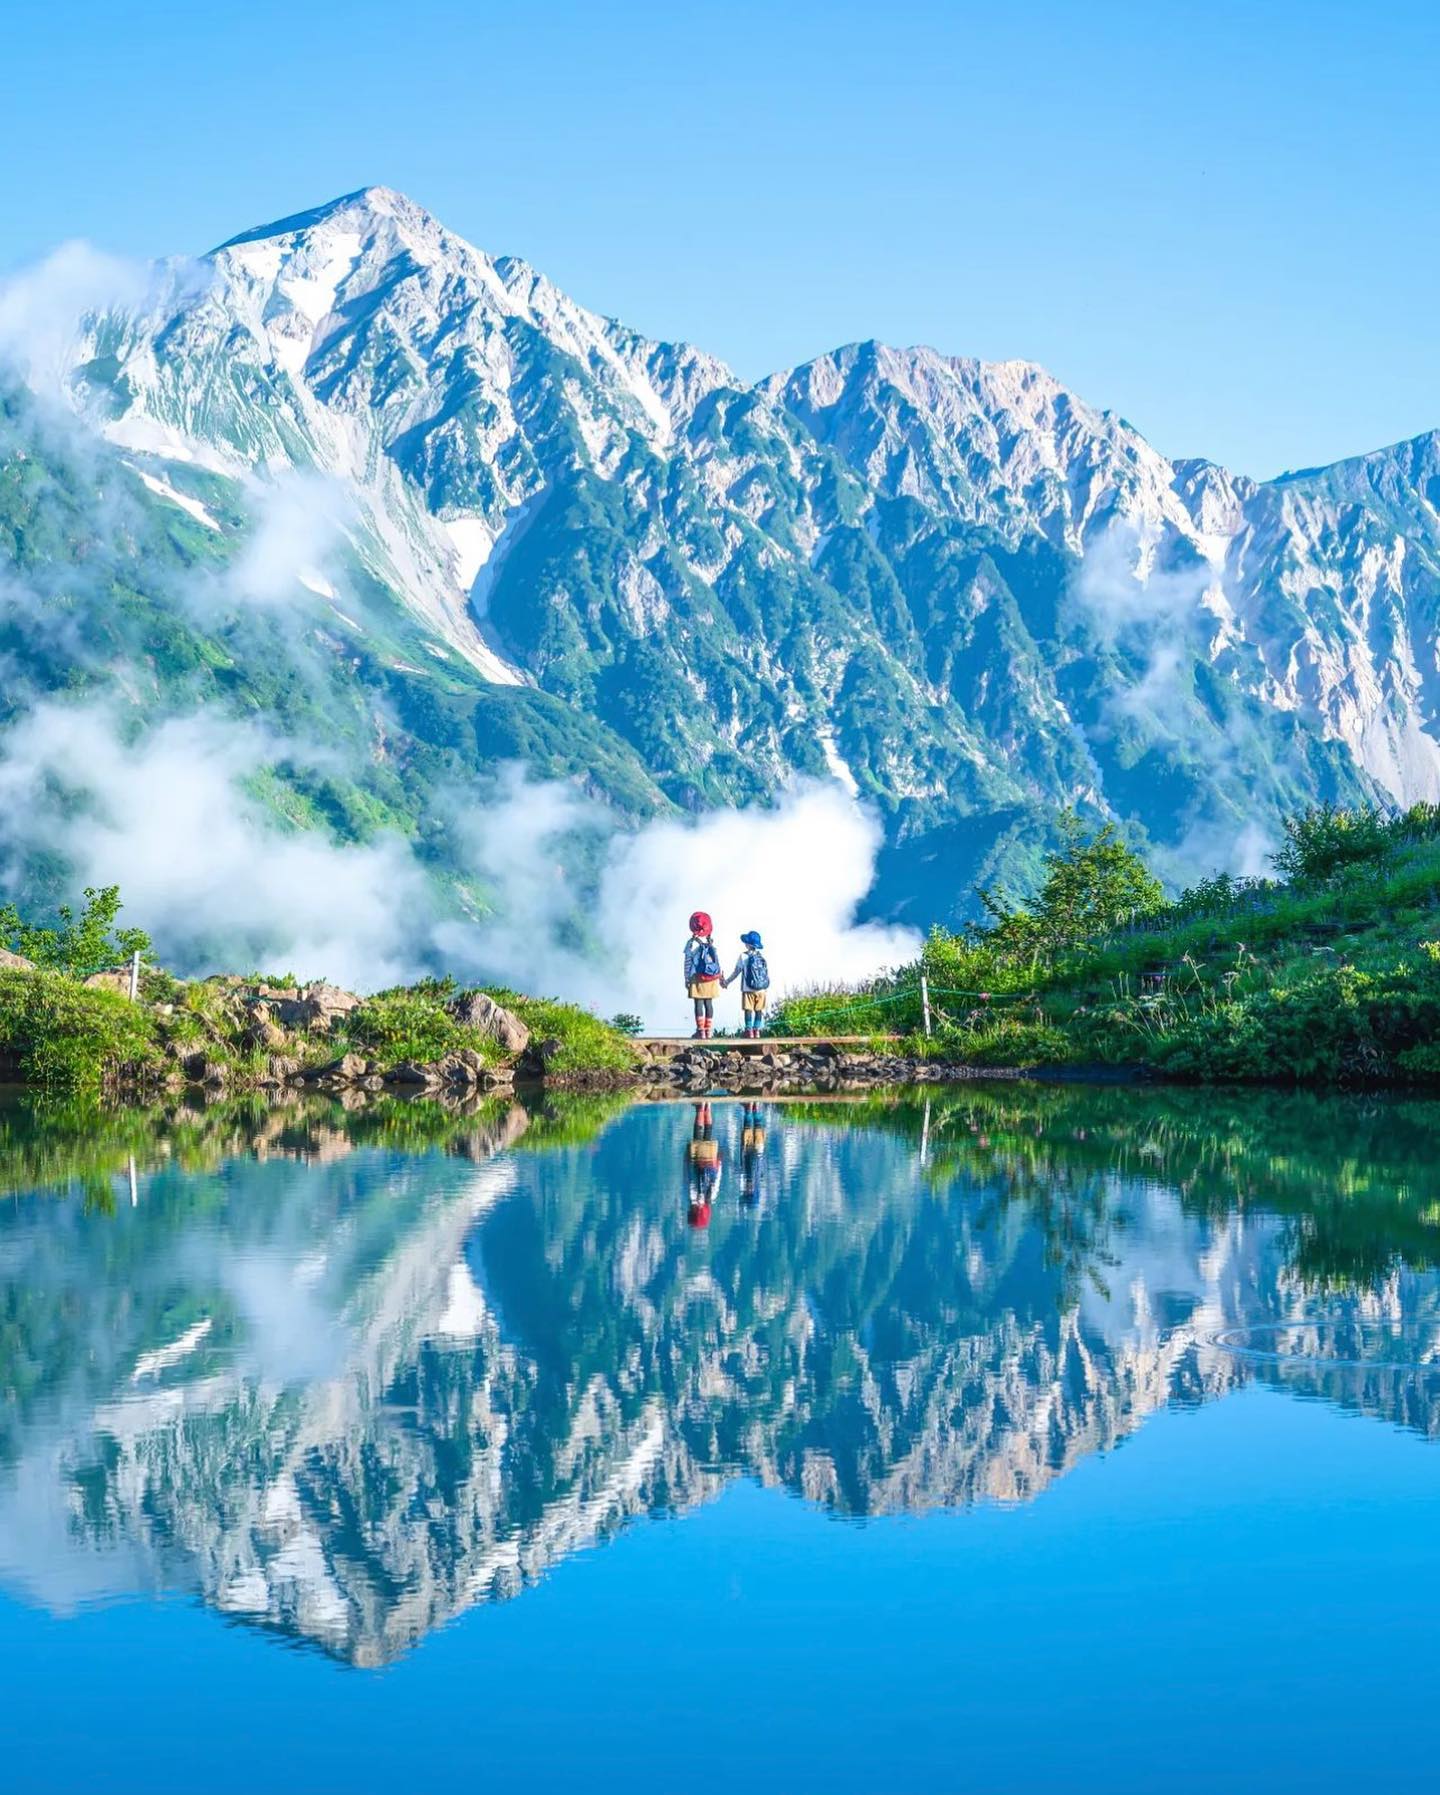 🇯🇵 【長野 Nagano】白馬 八方池
⛰️ 八方池是白馬岳最知名的絕景之一。水池位於海拔2060多米，無風時如同一面巨大的鏡子，能完美倒映著白馬連峰
❤️八方池四季有不同美景，秋天可以欣賞火紅楓葉，初夏則能一覽殘雪餘存的銀白世界，昂景色非常壯觀，是日本中部地區最具代表性的攝影地點
📷credit@kaji_nori06#japantravel #nagano #hakuba #長野旅行 #白馬八方池 #八方池 #把世界當教室🌍 #travelwithmikeanna